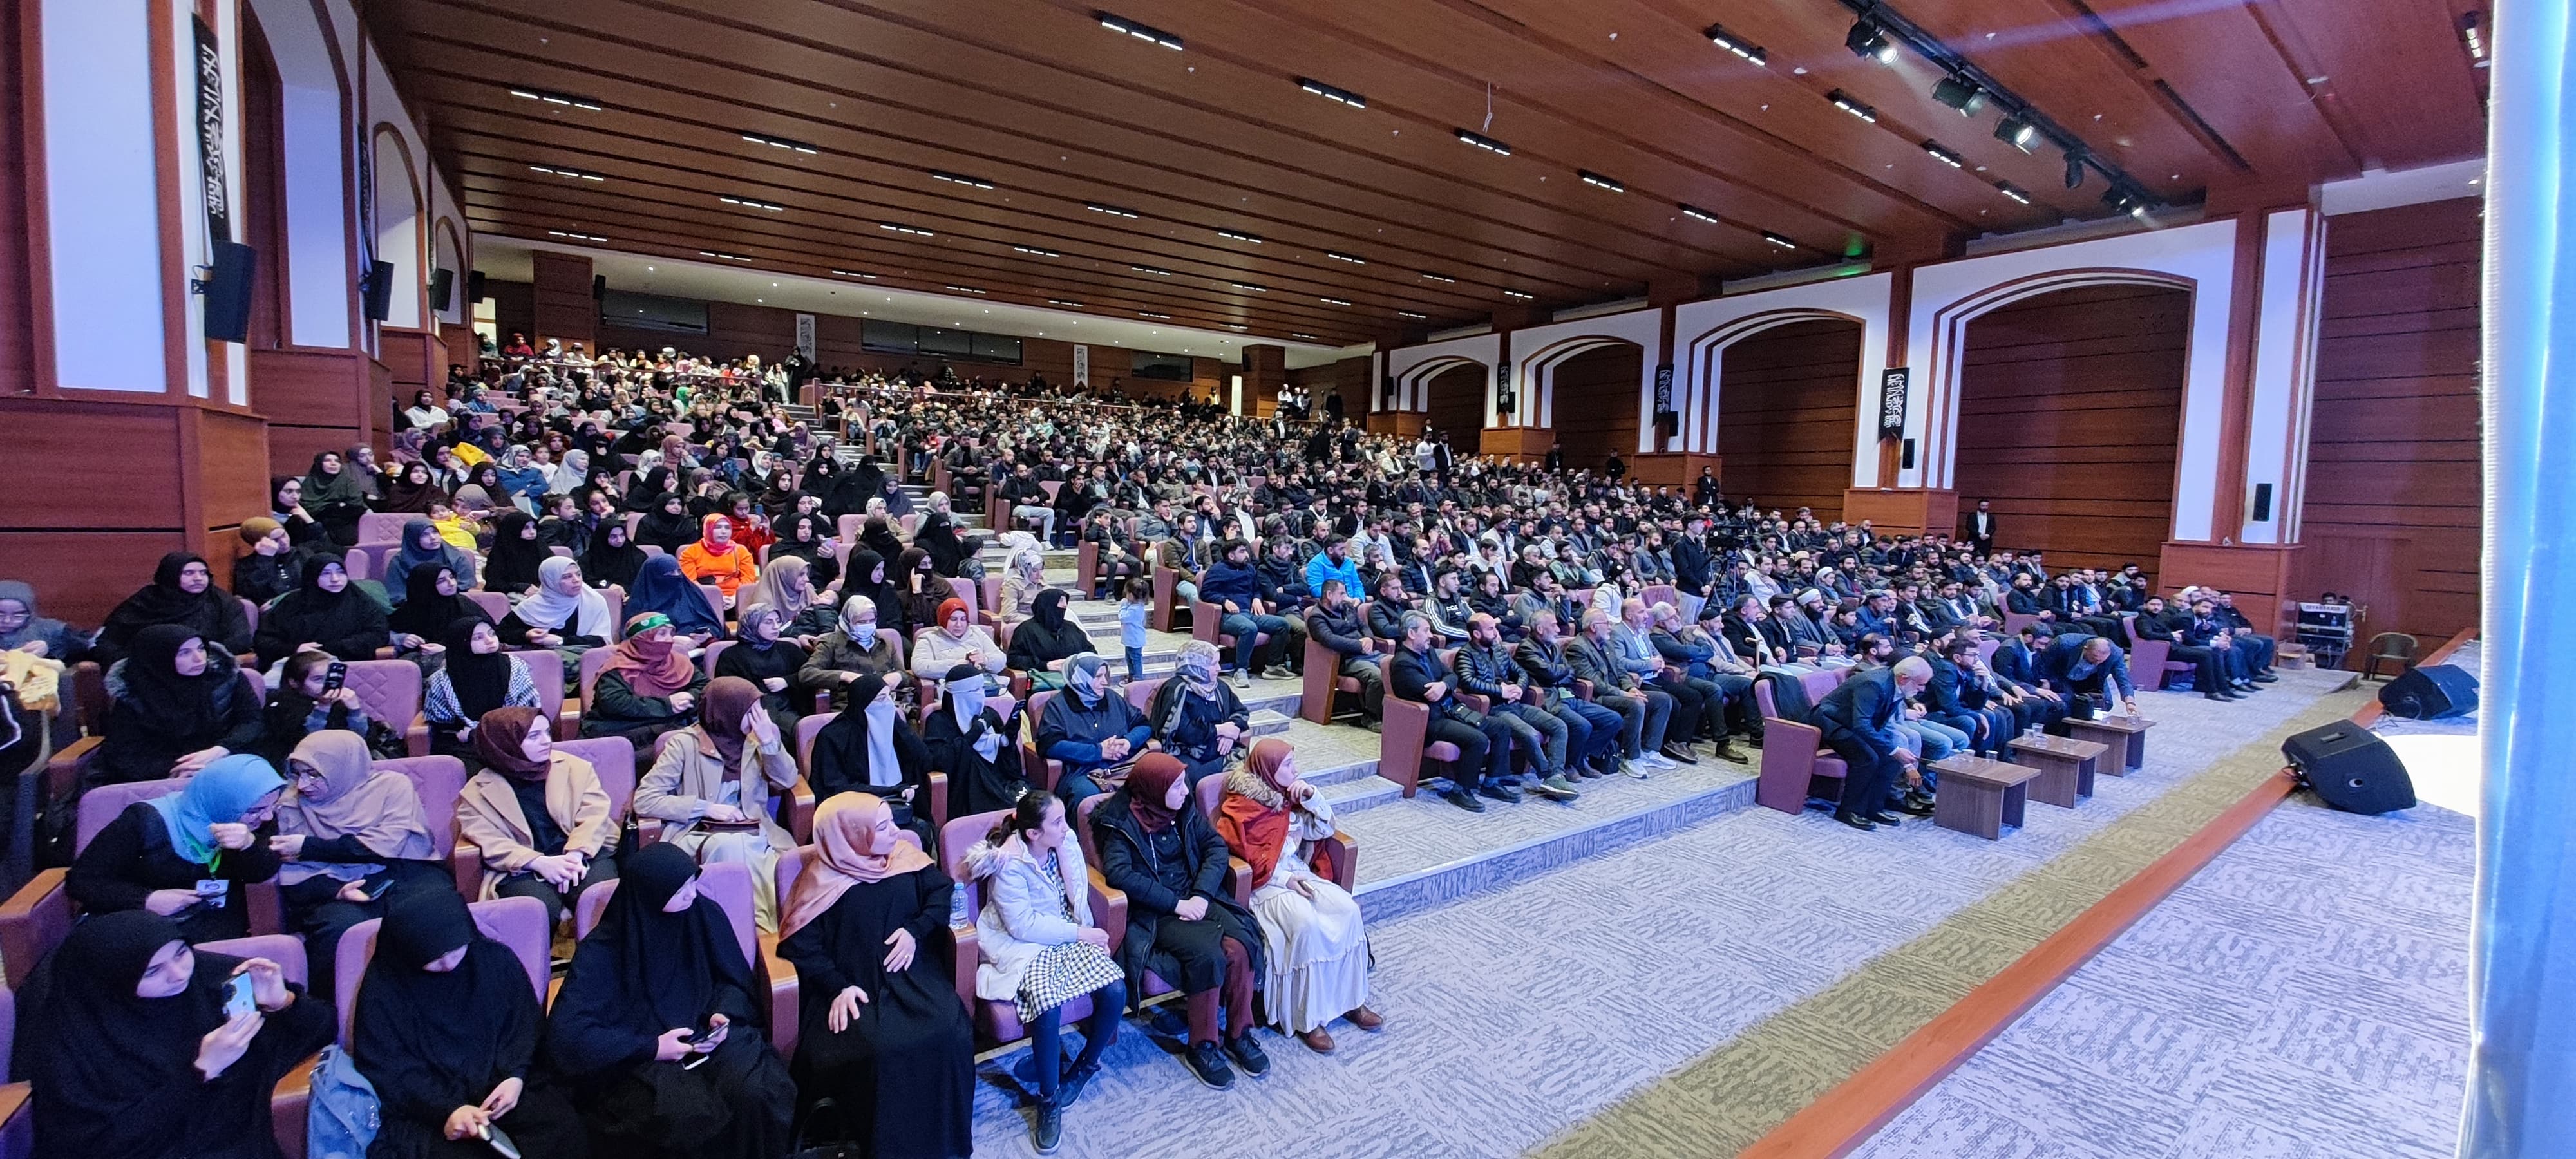 Köklü Değişim, Diyarbakır’da Düzenlediği Konferansta “Hilafet”i Konuştu, Genel-1.jpeg